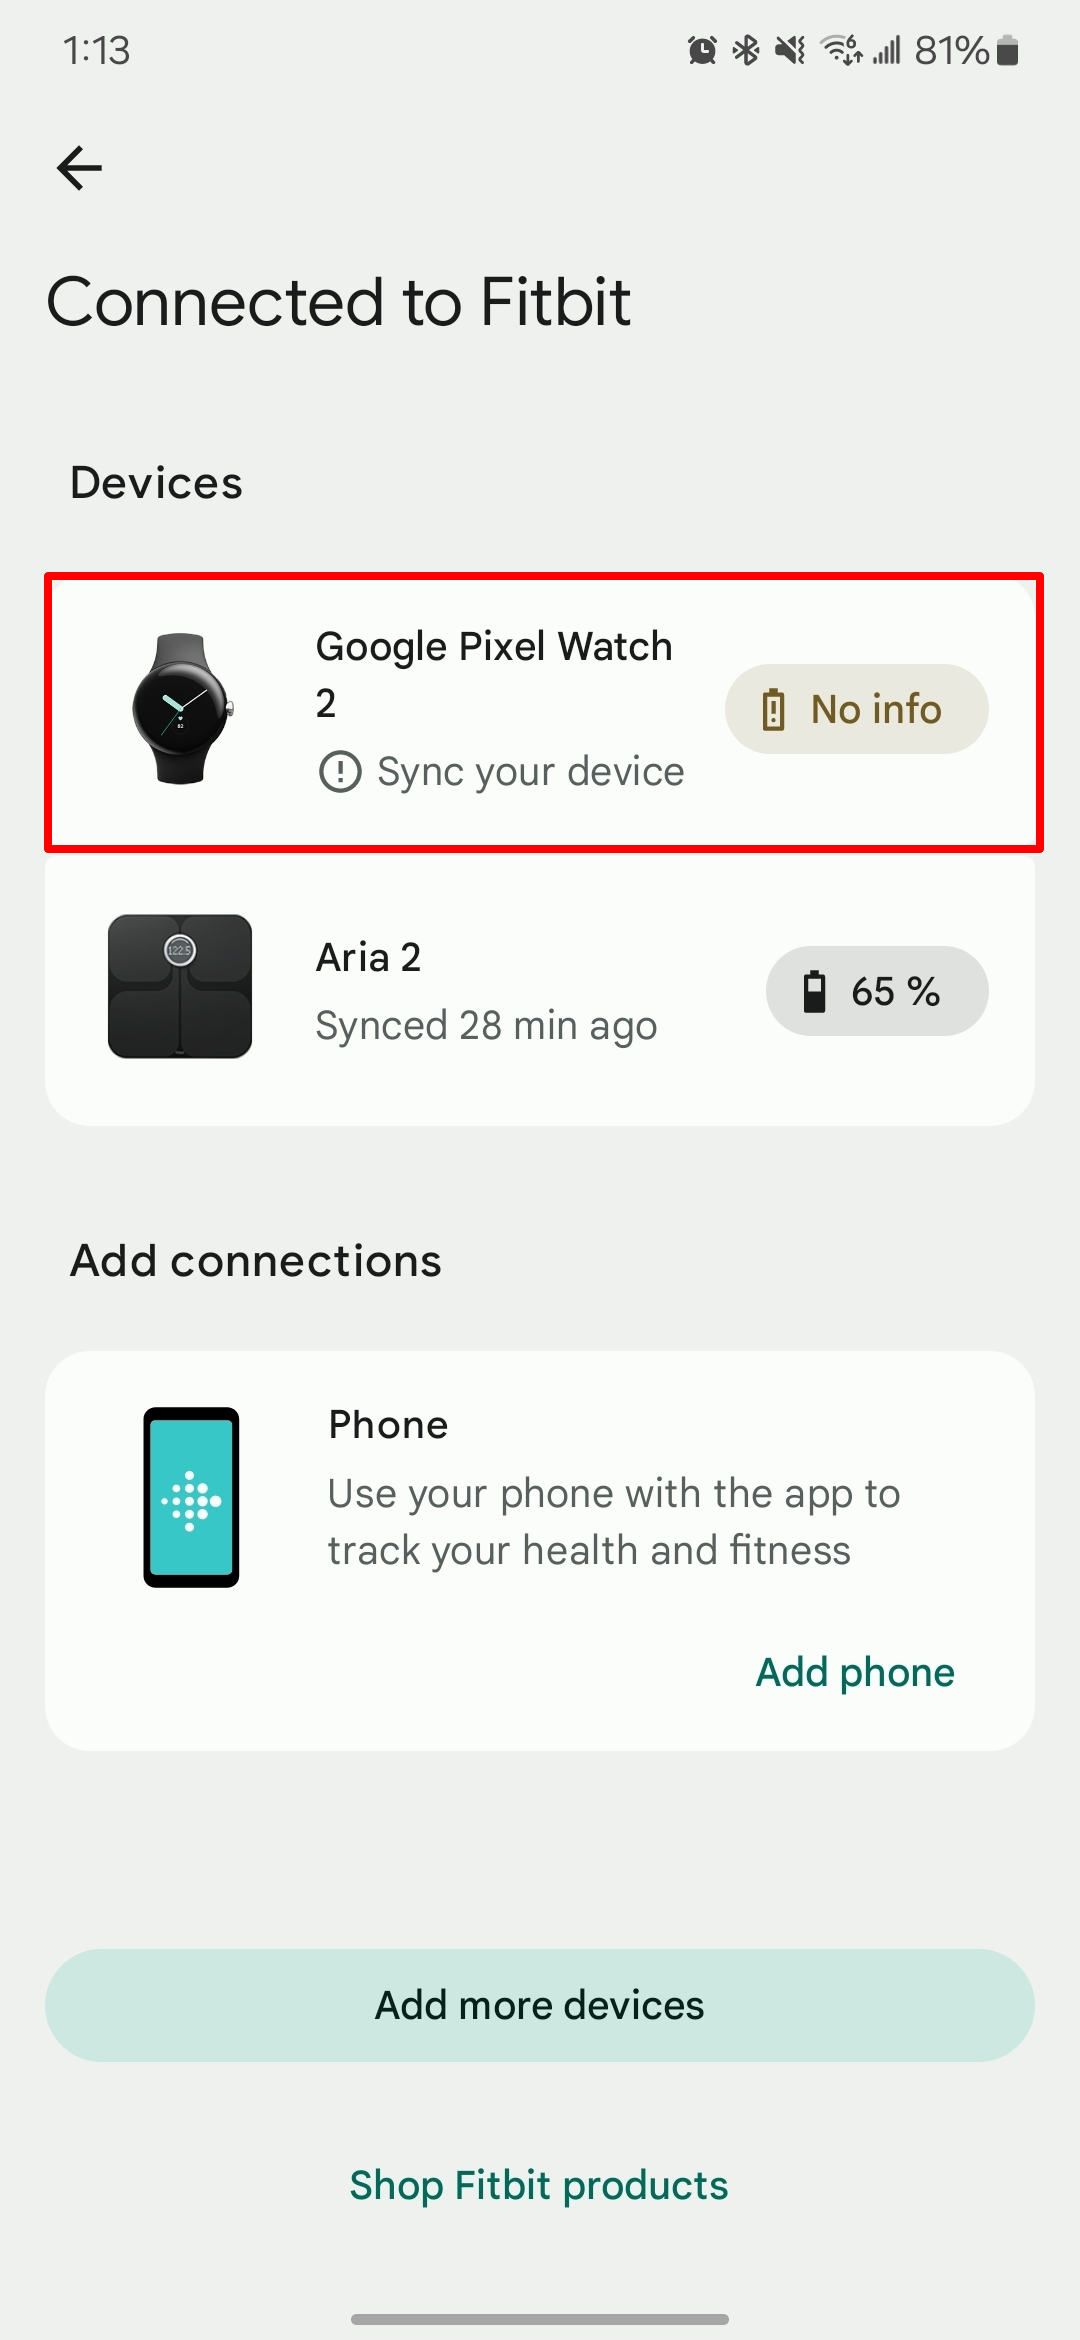 Captura de tela do aplicativo Fitbit mostrando dispositivos conectados com o Google Pixel Watch 2 em destaque.